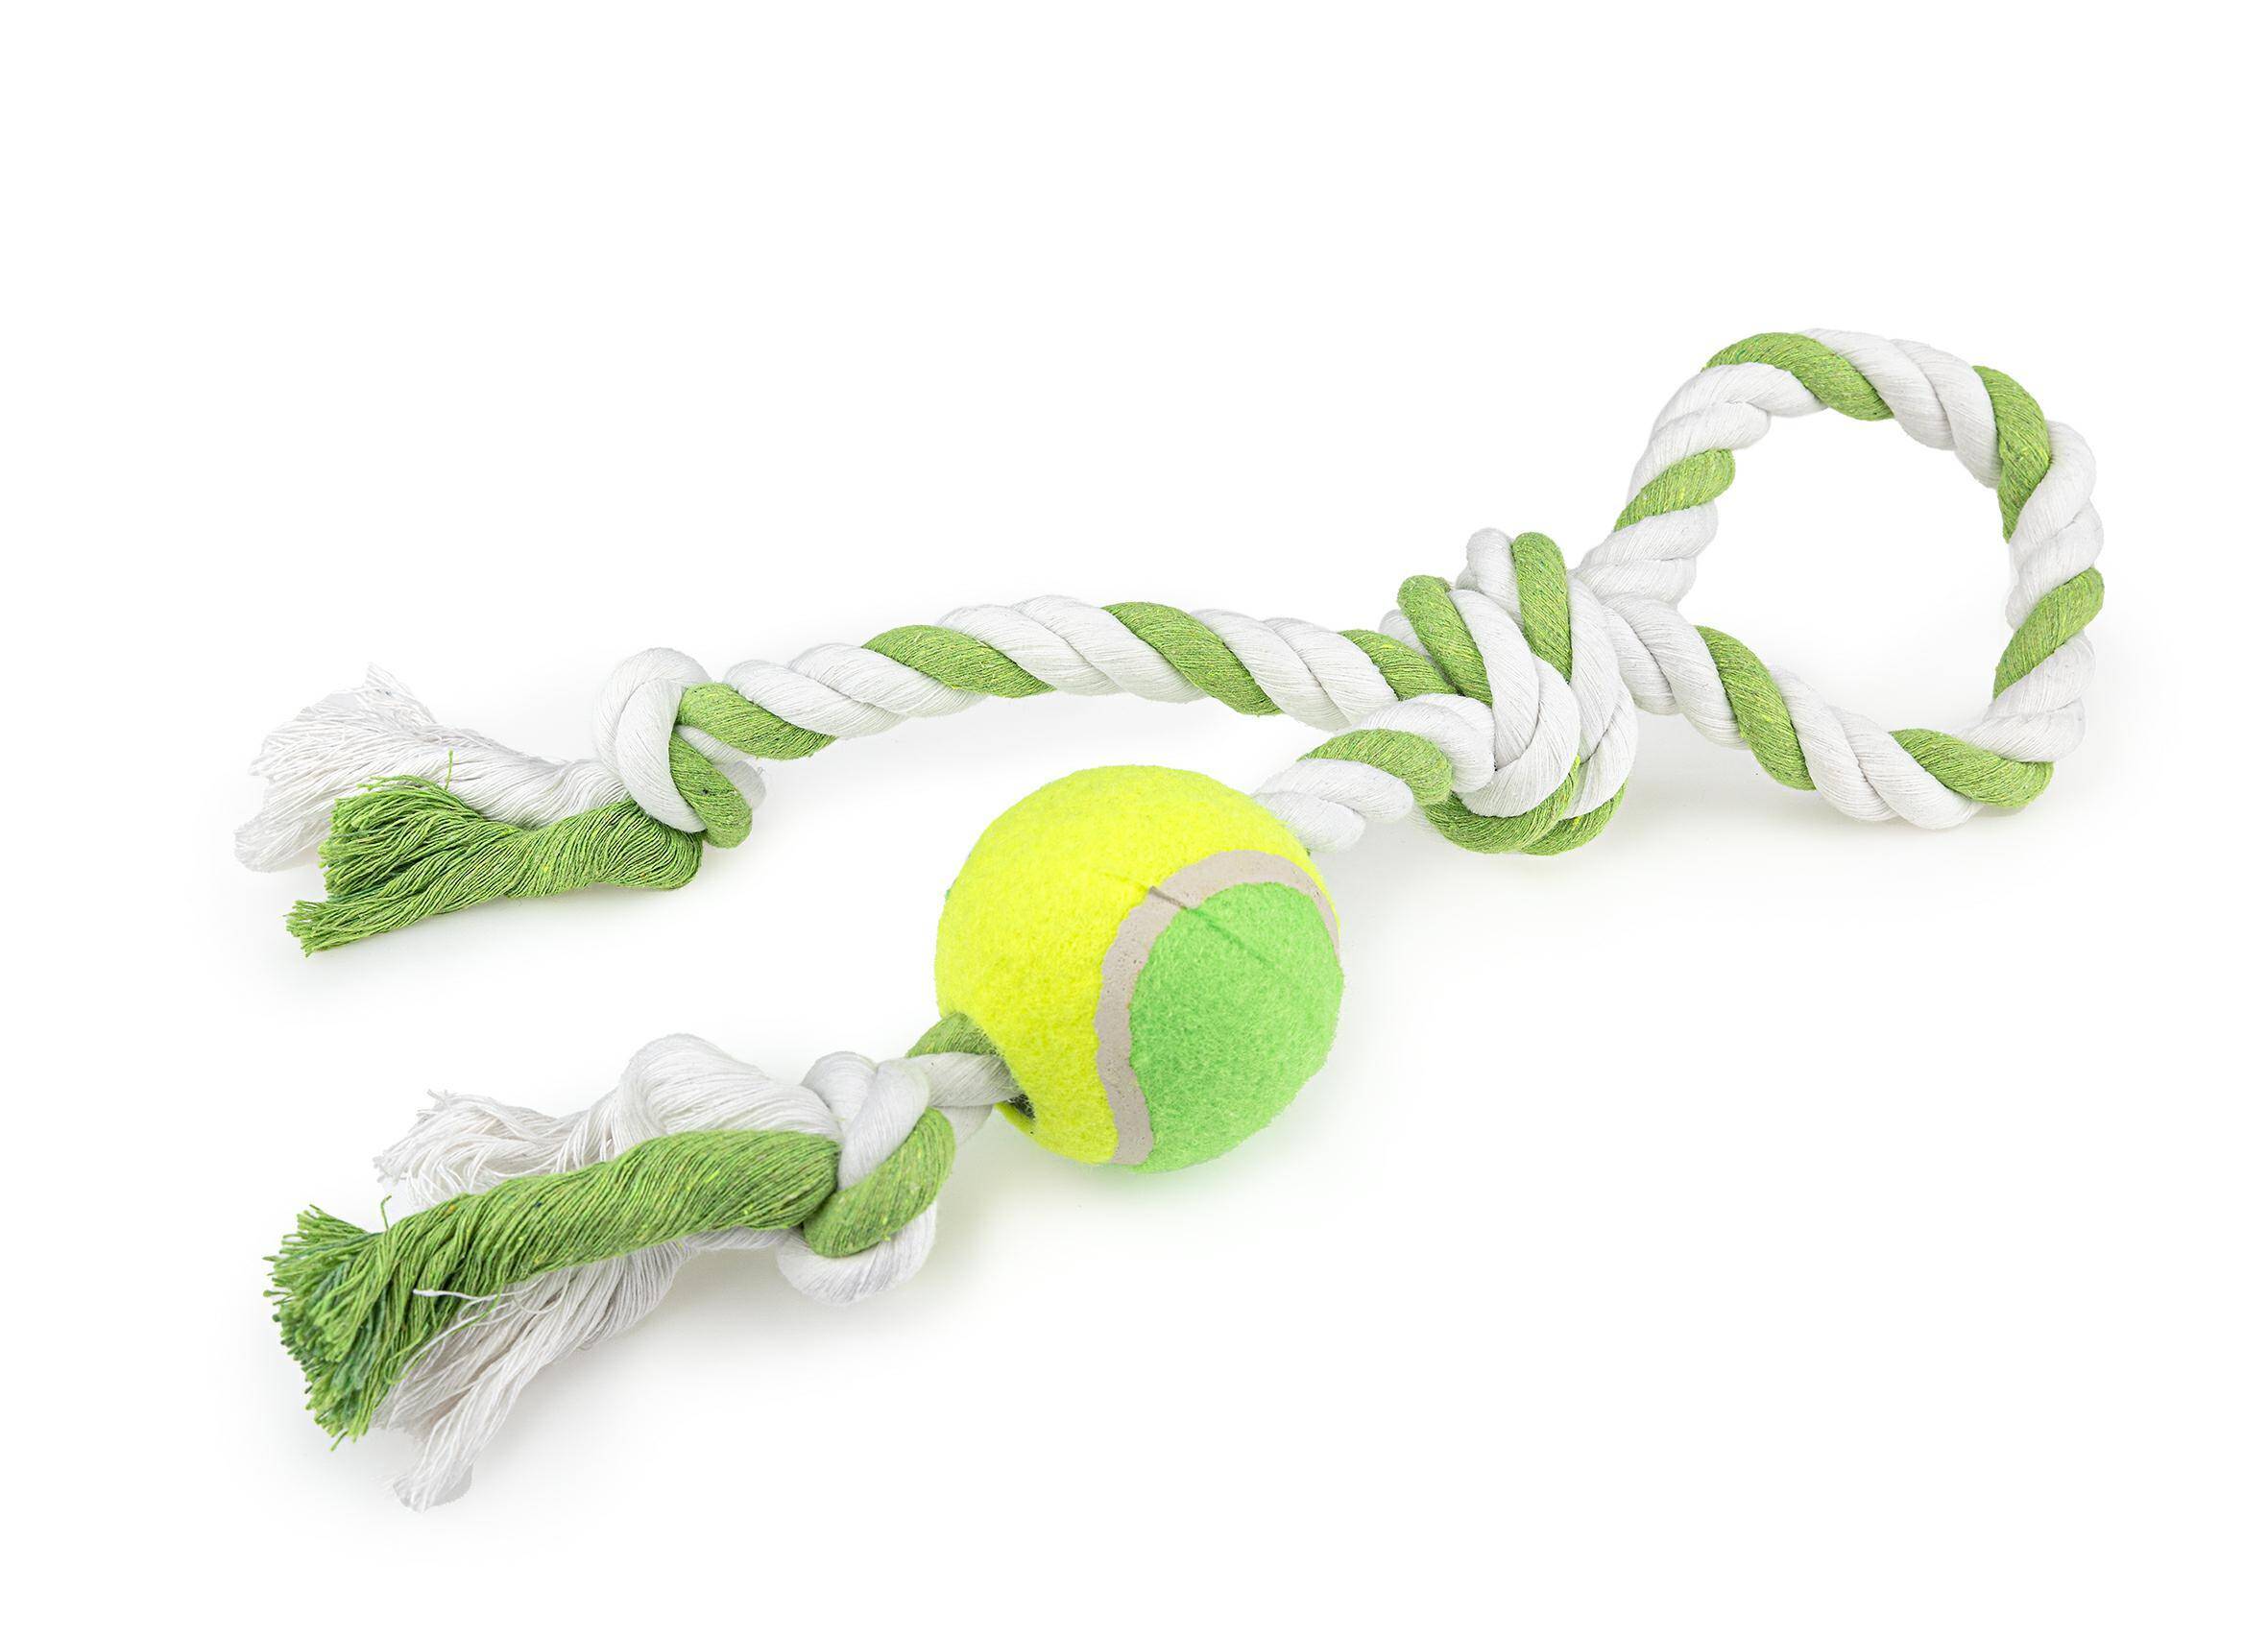 Zabawka sznurek pętla + tenis Happet Z549 40cm (Zdjęcie 2)